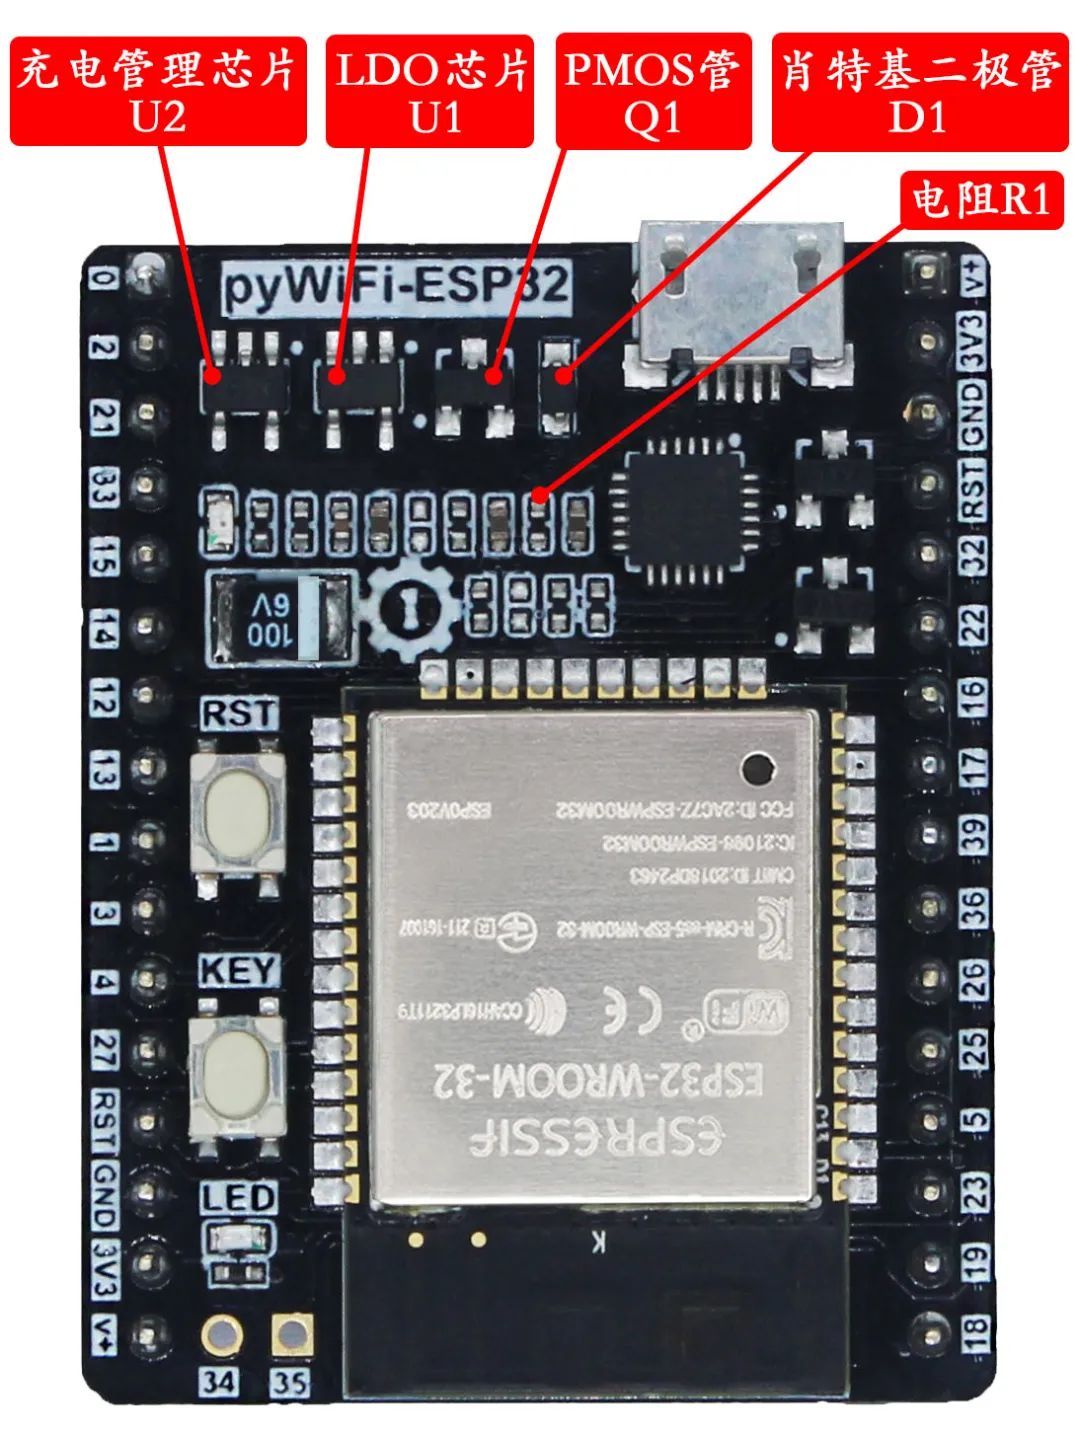 外置USB供电与内置锂电池供电的自动切换电路介绍,f443e020-12bb-11ed-ba43-dac502259ad0.jpg,第16张